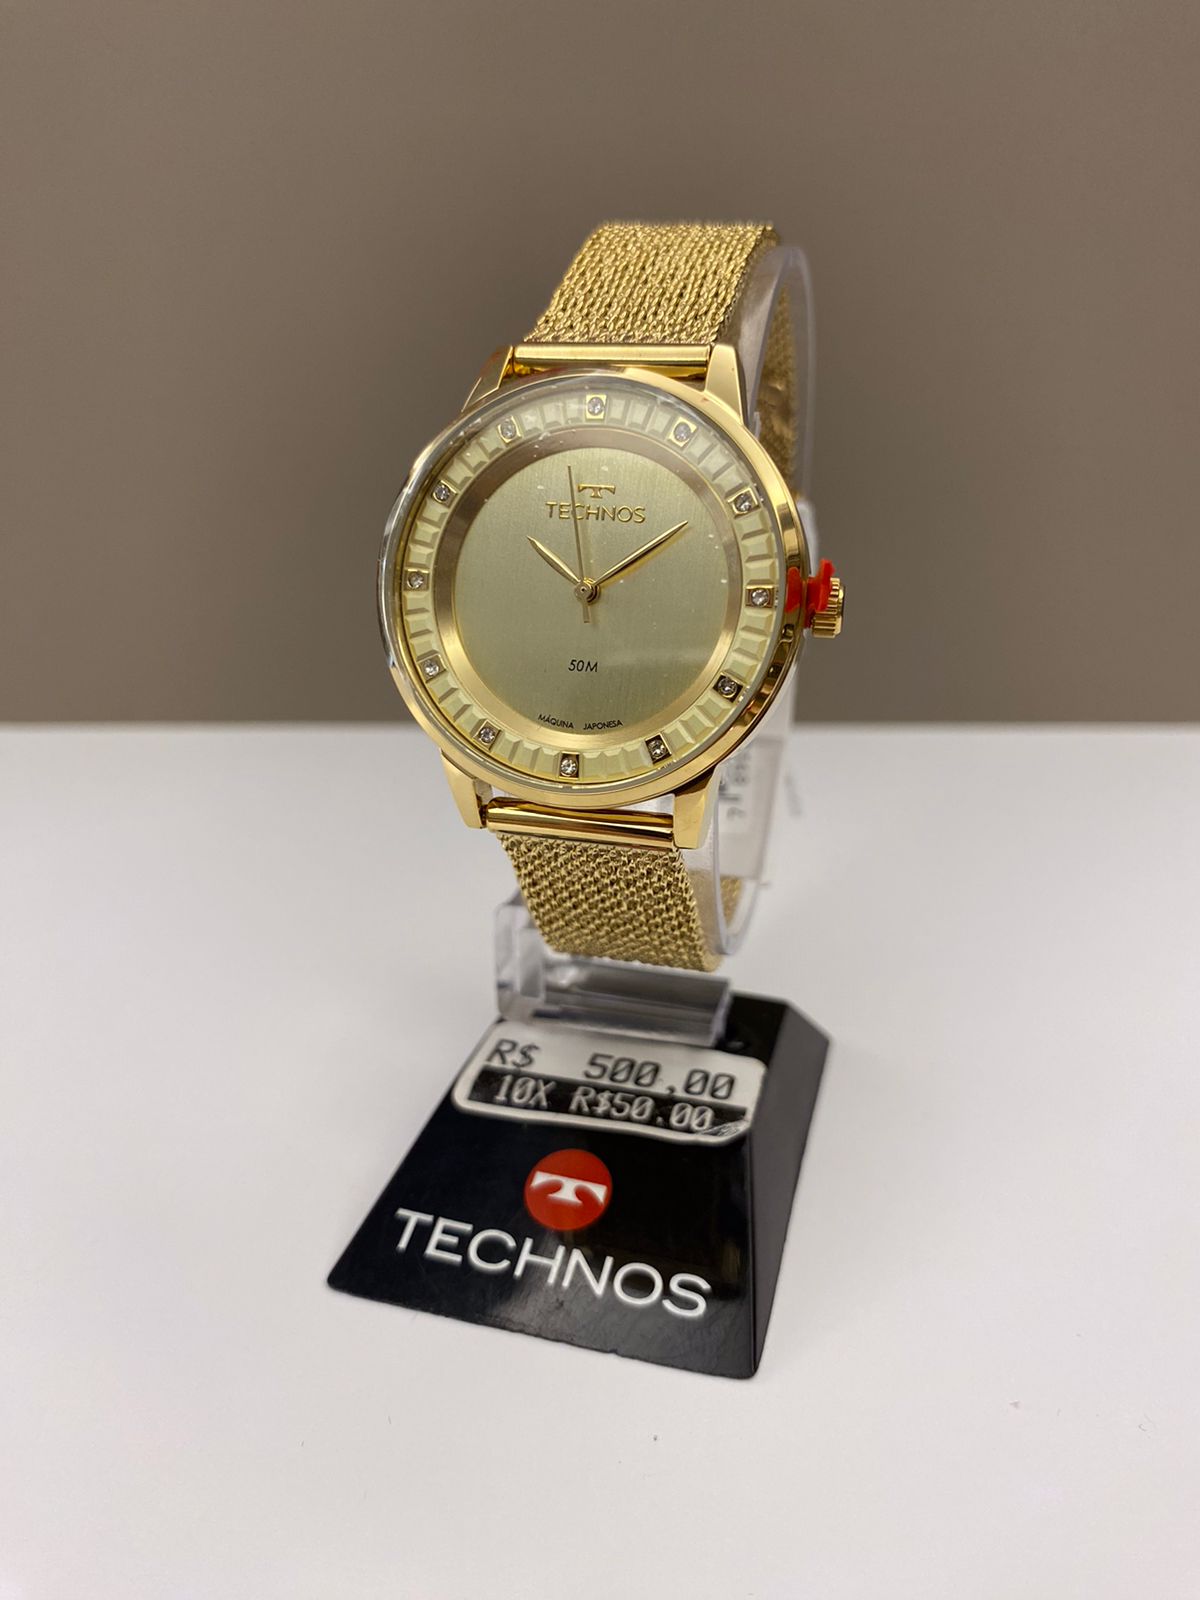 Relógio Technos Feminino Dourado Minimalista Visor Champanhe com Cristais Pulseira Milanesa Maquinário Japonês Aço Inoxidável Á Prova d'água 203MZC/1D  